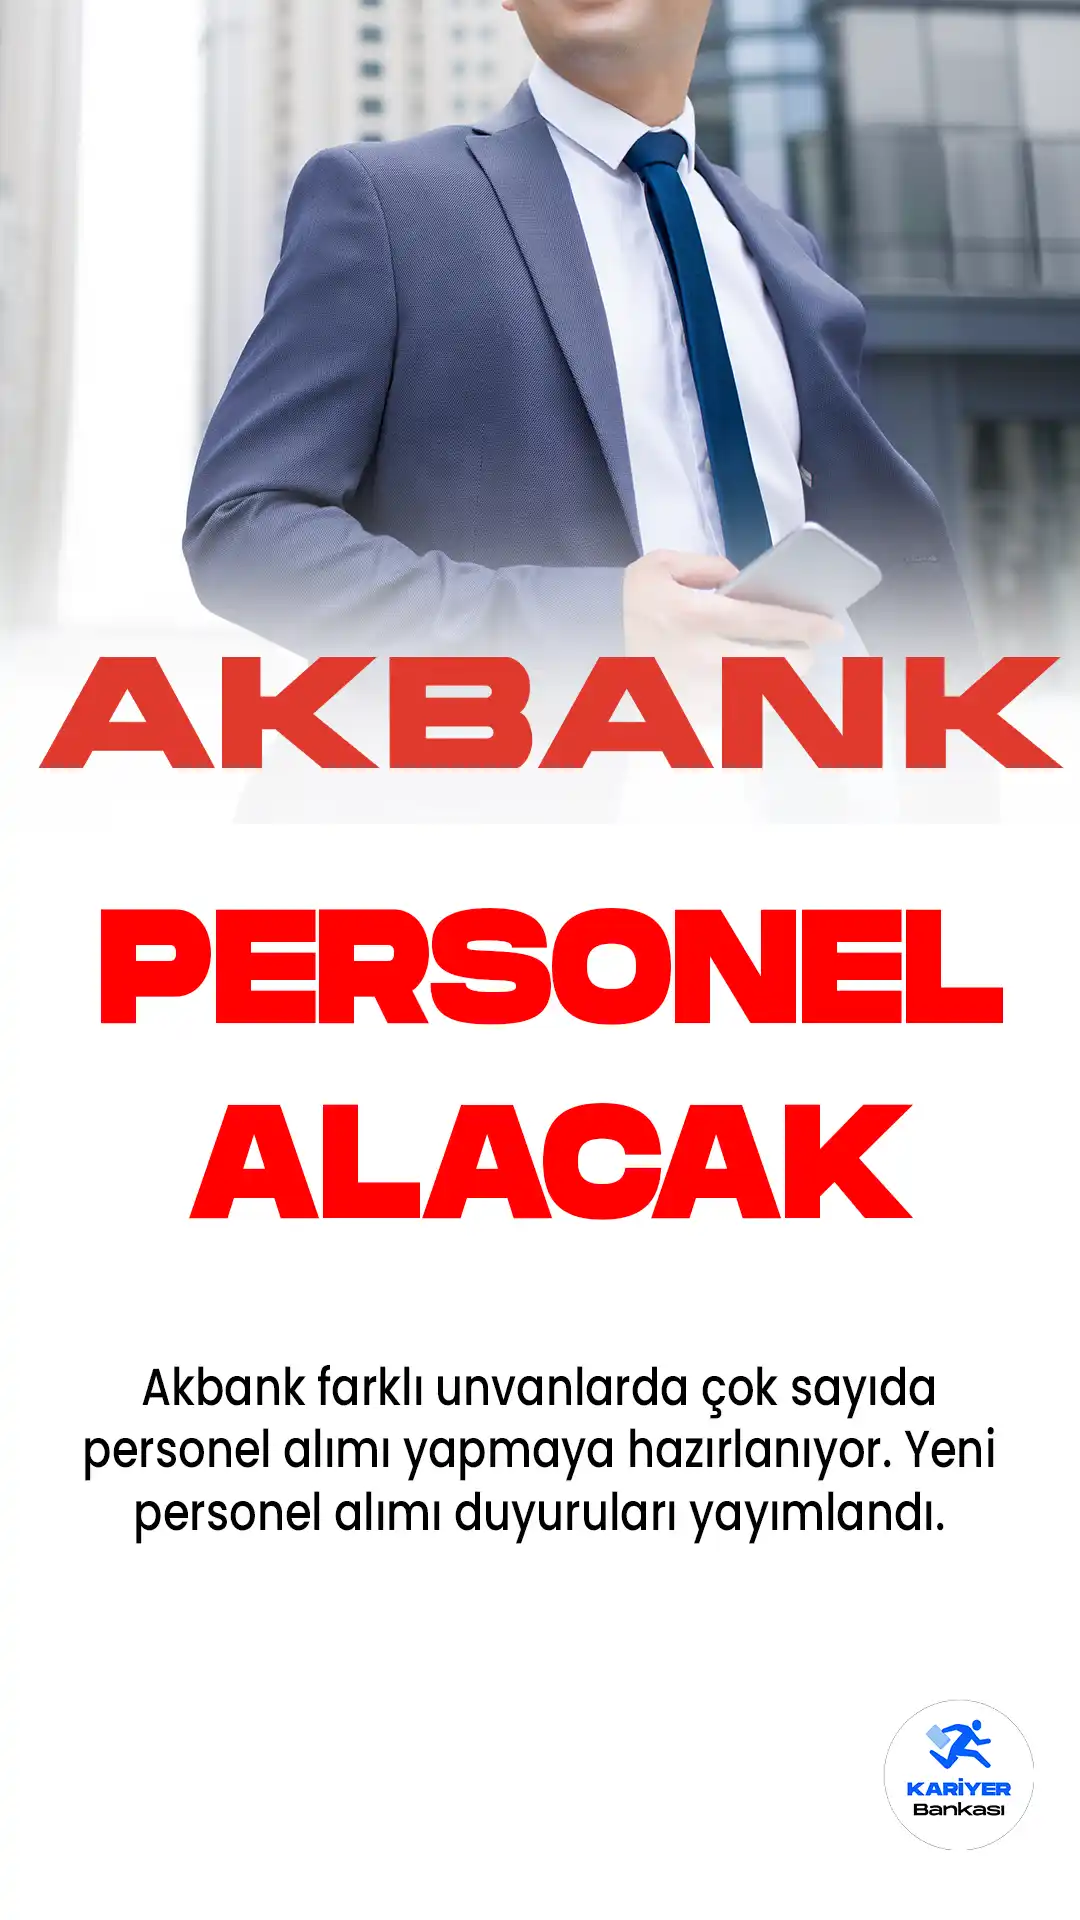 Akbank resmi kariyer sayfası üzerinden yeni personel alımı duyuruları yayımladı. Bankaya yüzlerce yeni personel alımı yapılması planlanıyor.